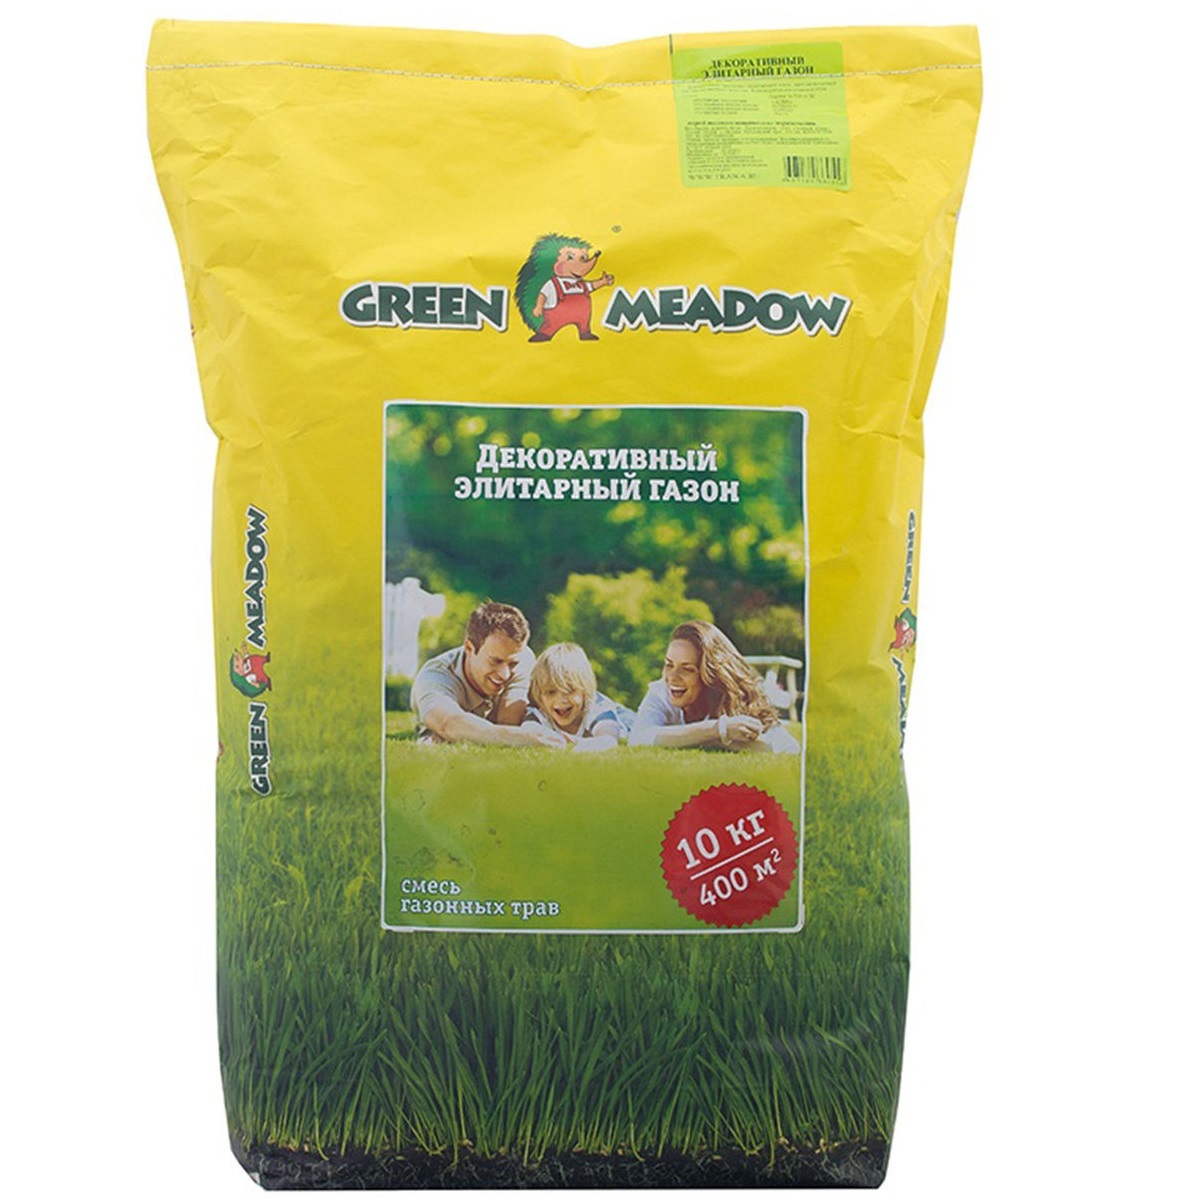 Газон Green Meadow партерный английский 10 кг газон green meadow декоративный элитарный 1 кг